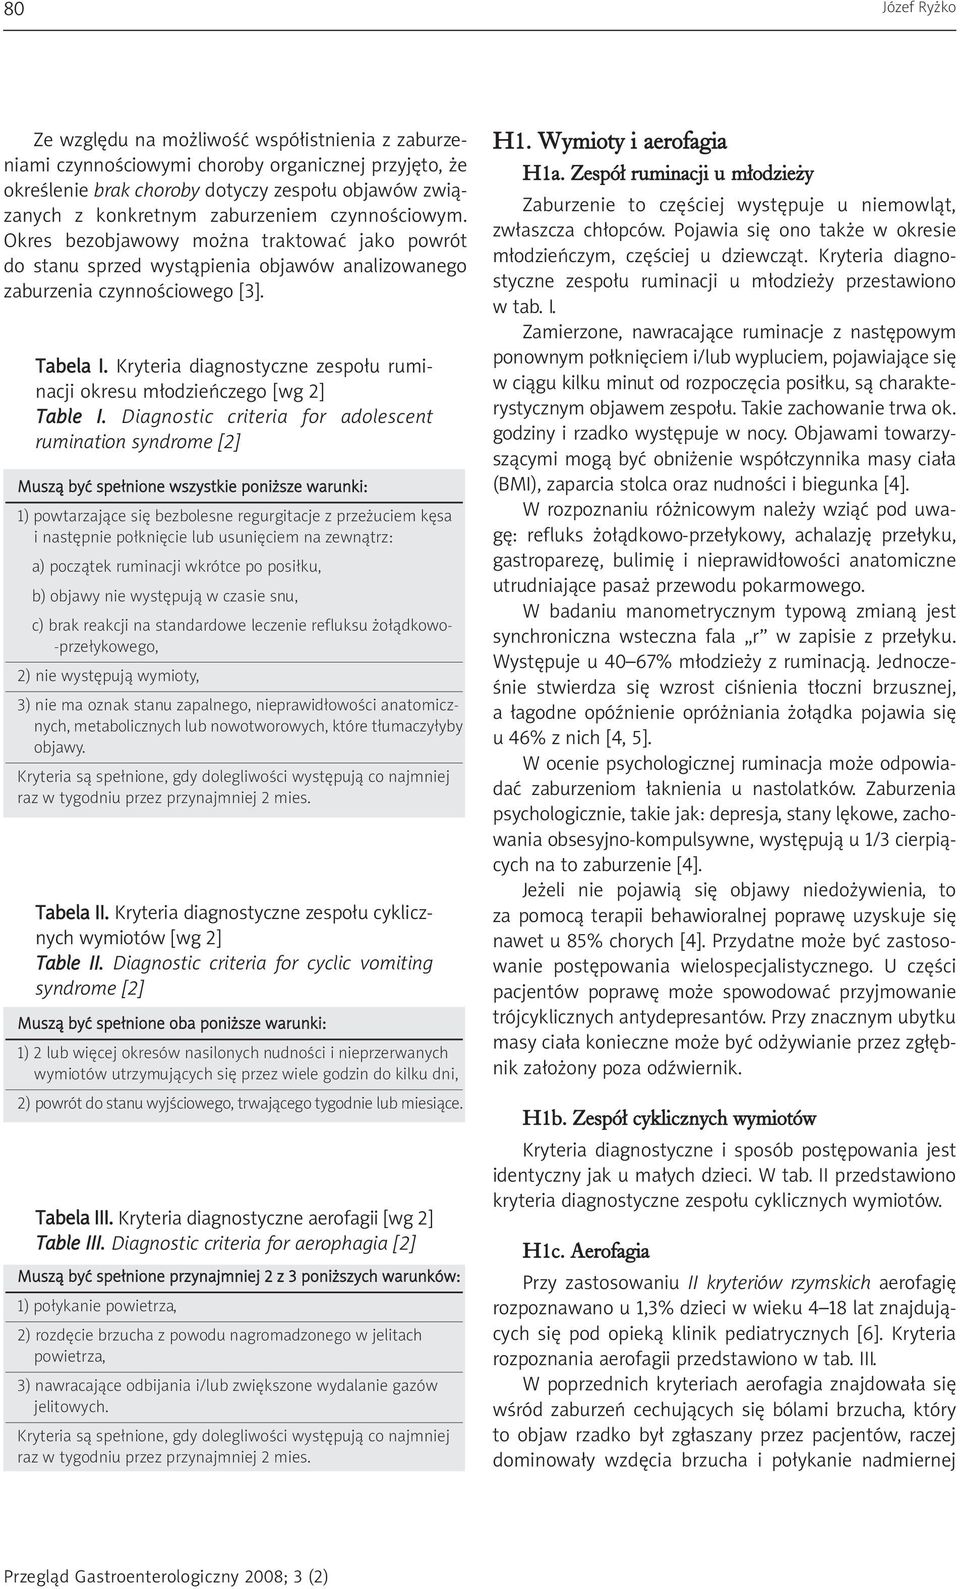 Kryteria diagnostyczne zespołu ruminacji okresu młodzieńczego [wg 2] Table I.